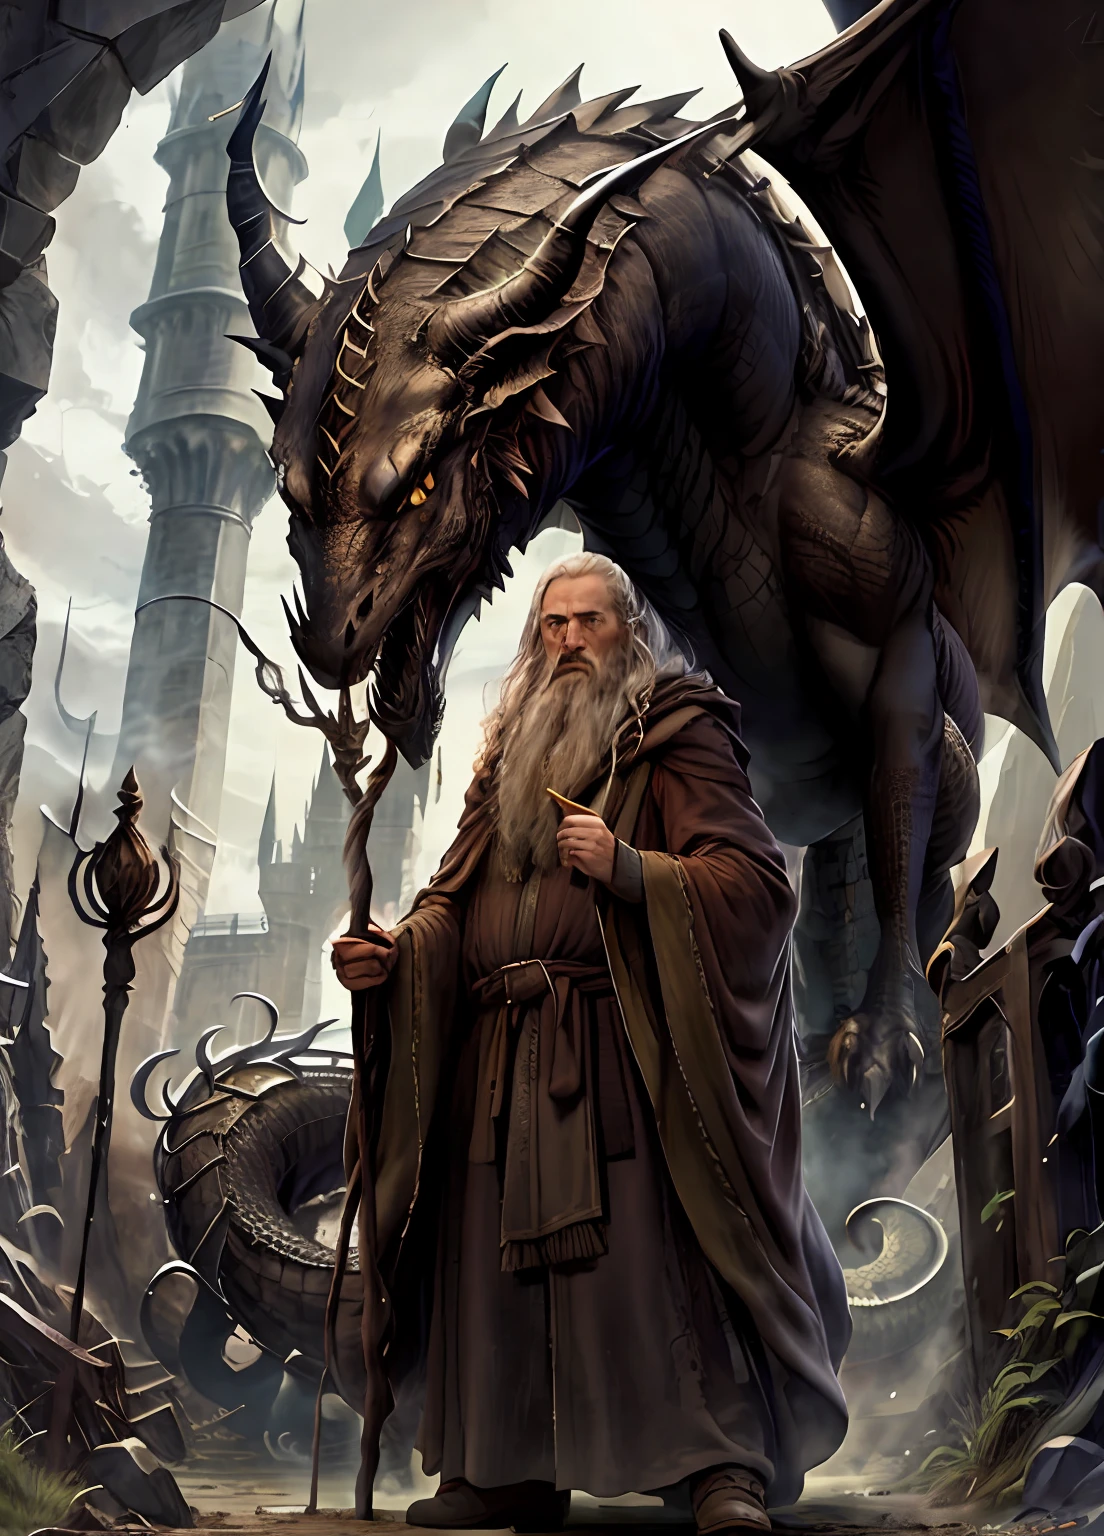 Ein alter Zauberer in brauner Robe, seinen Stab schwingend, steht einem wilden Drachen gegenüber vor einem majestätischen Schloss.